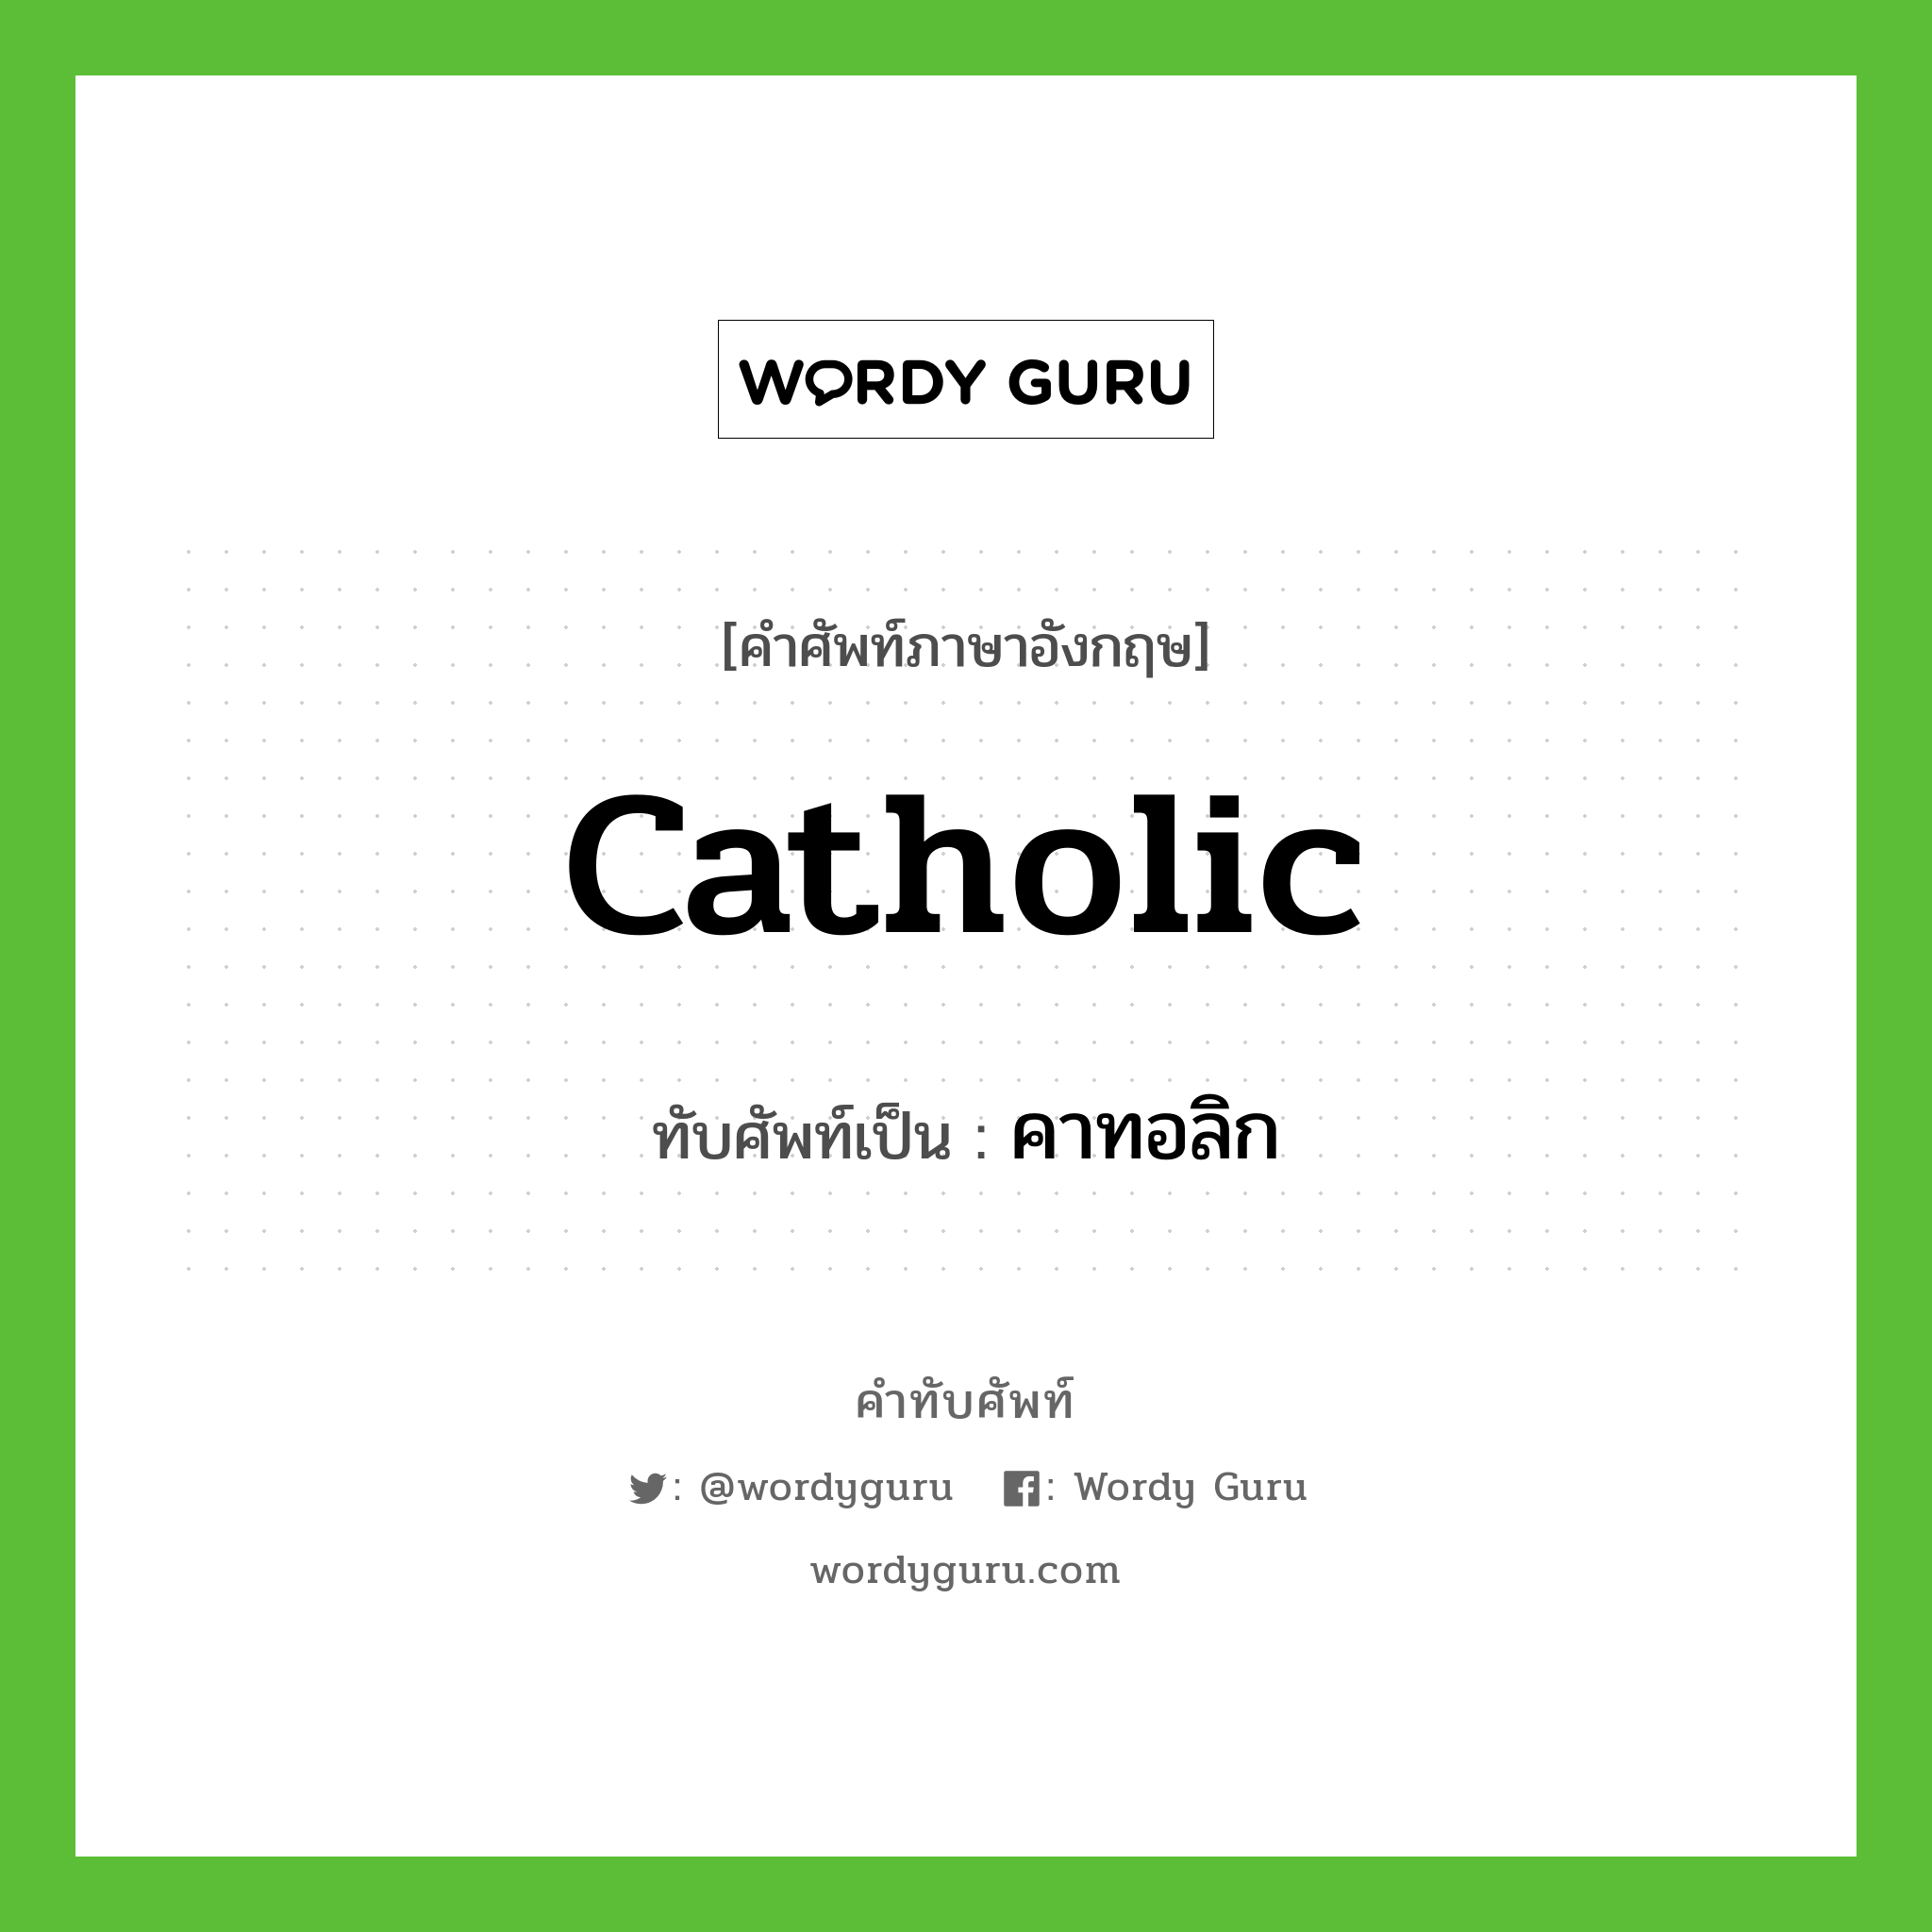 Catholic เขียนเป็นคำไทยว่าอะไร?, คำศัพท์ภาษาอังกฤษ Catholic ทับศัพท์เป็น คาทอลิก